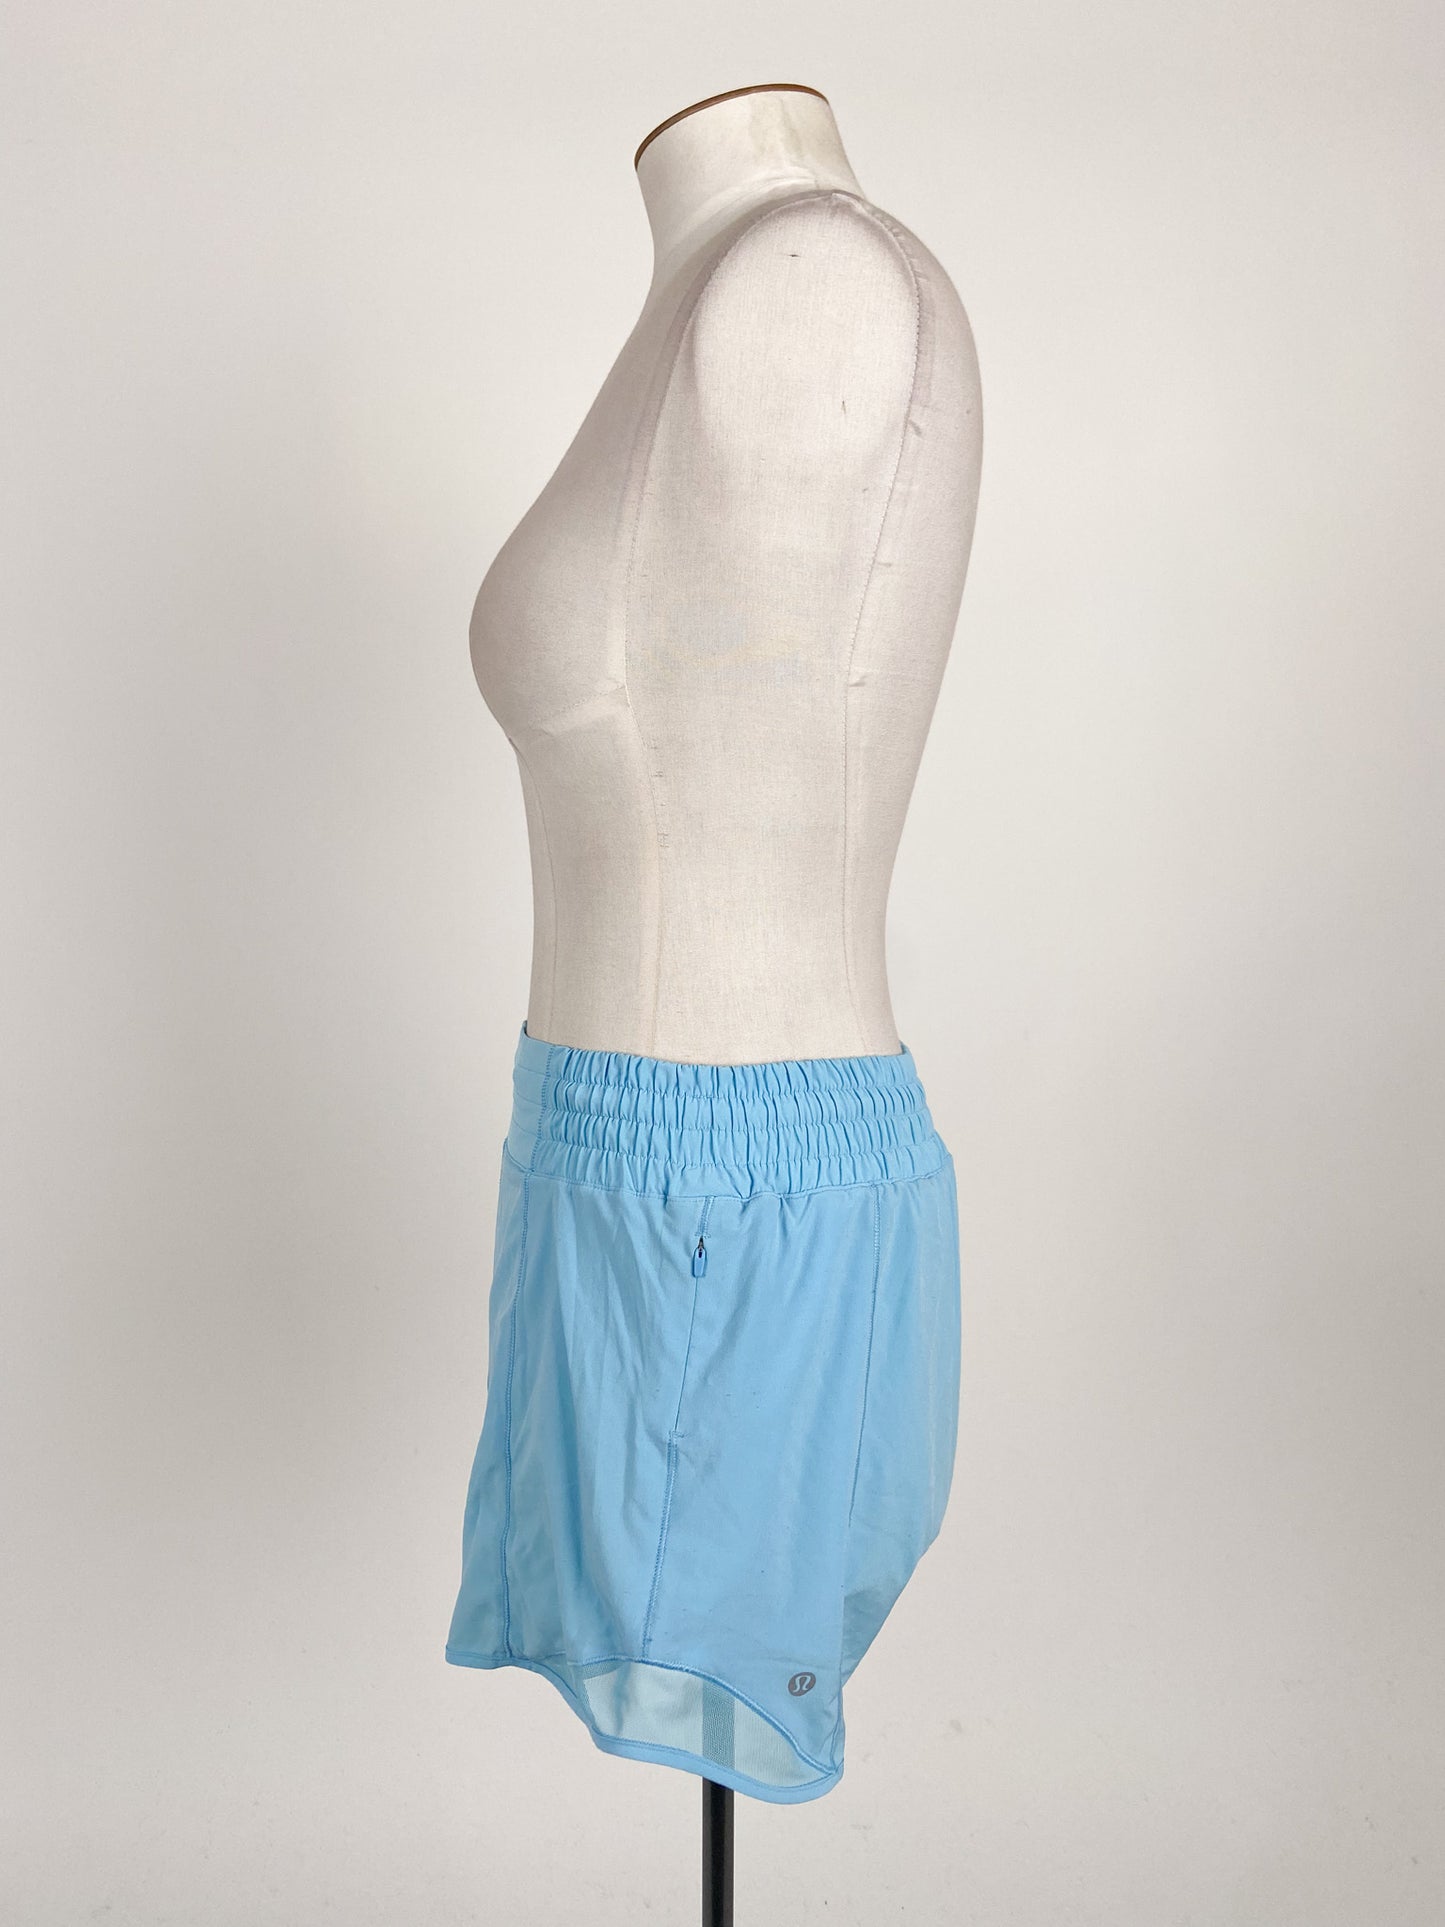 Lululemon | Blue Casual Activewear Bottom | Size 12